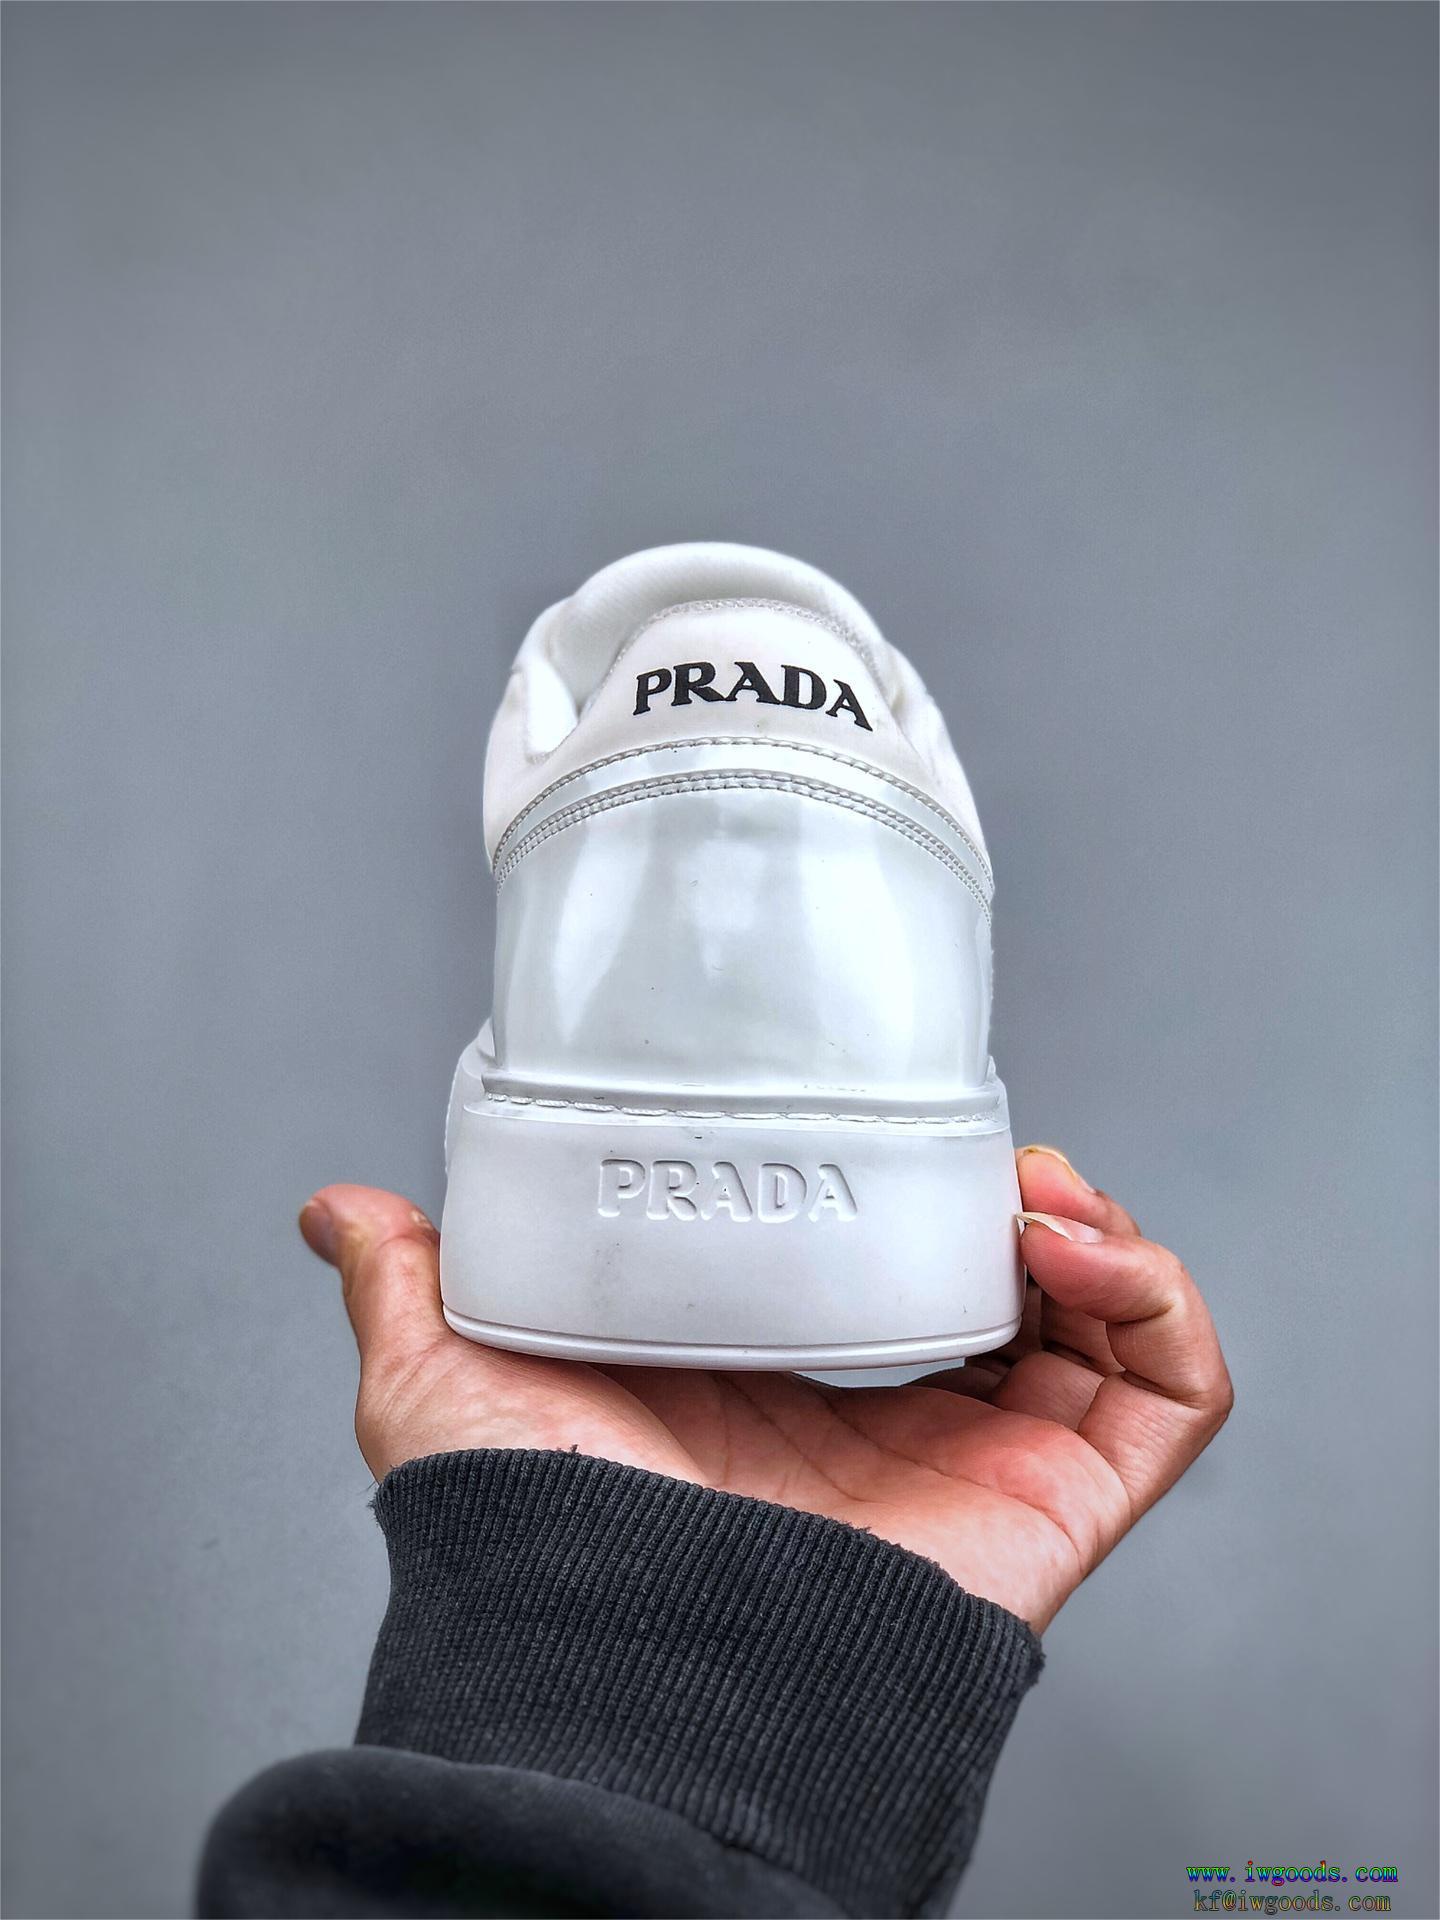 プラダPRADA靴ブランド コピー s 級,靴ブランド 品 コピー